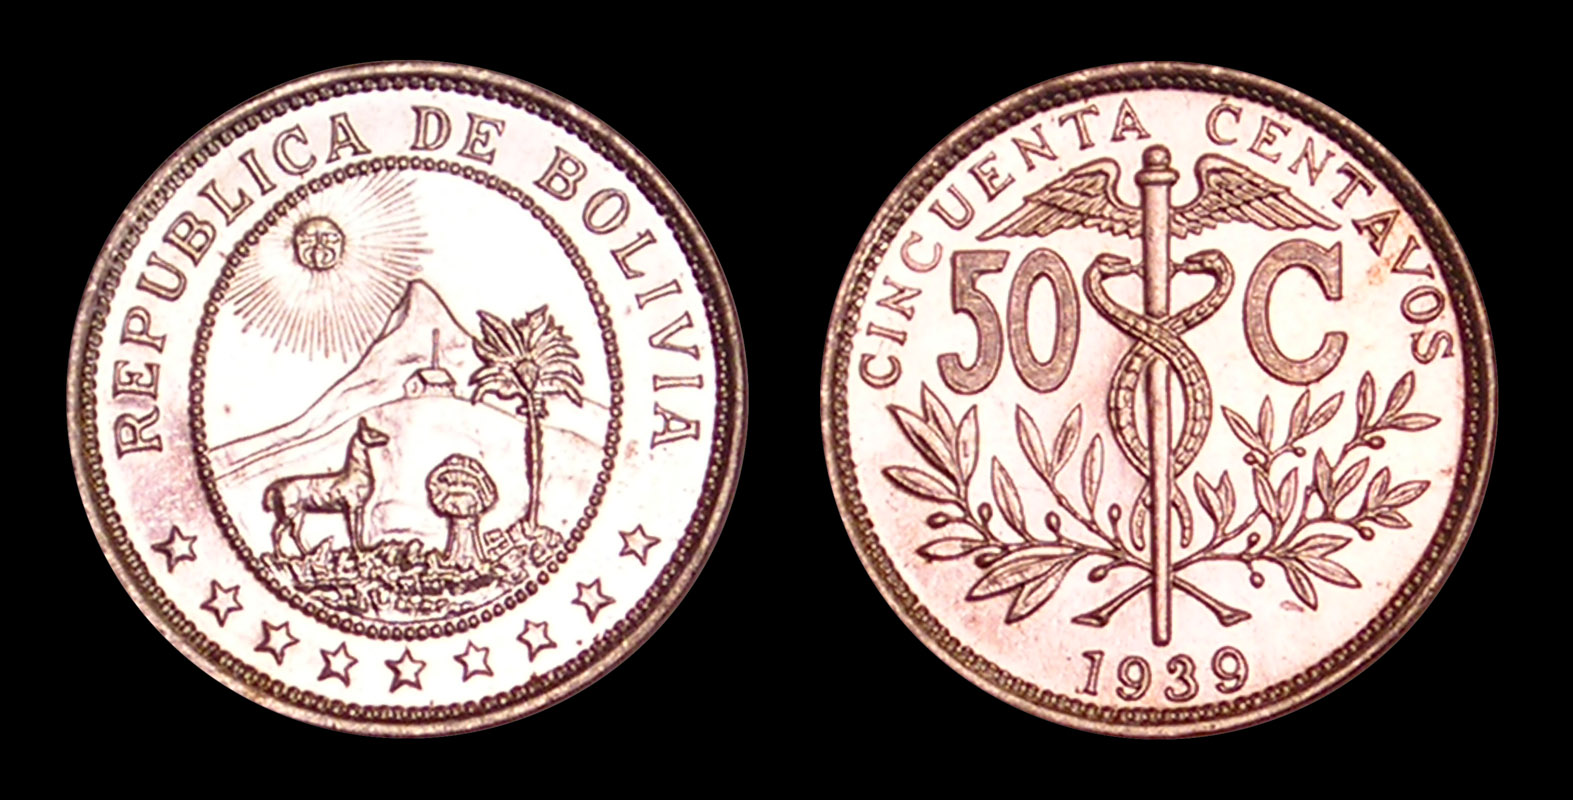 Bolivia 1939 50 Centavos.jpg